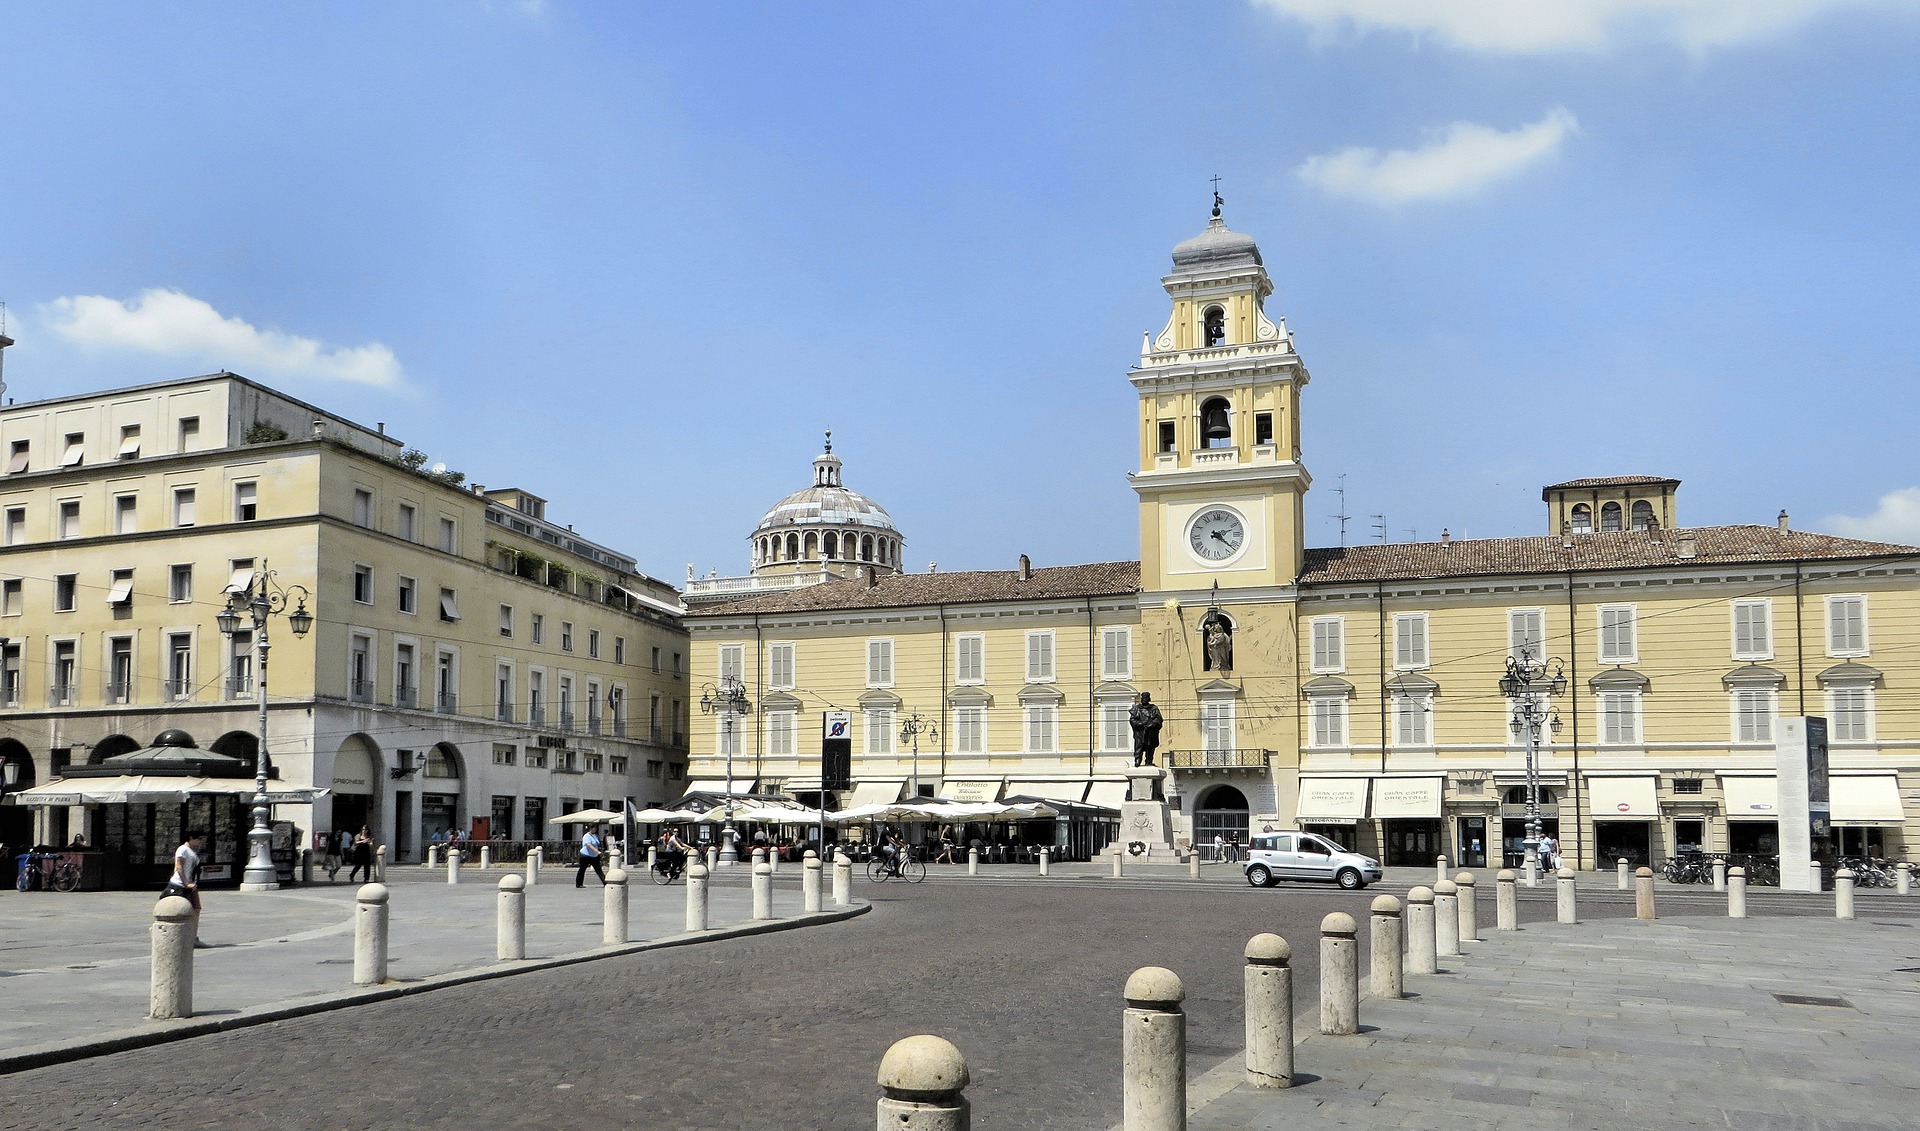 Parma, il report immobiliare 2021